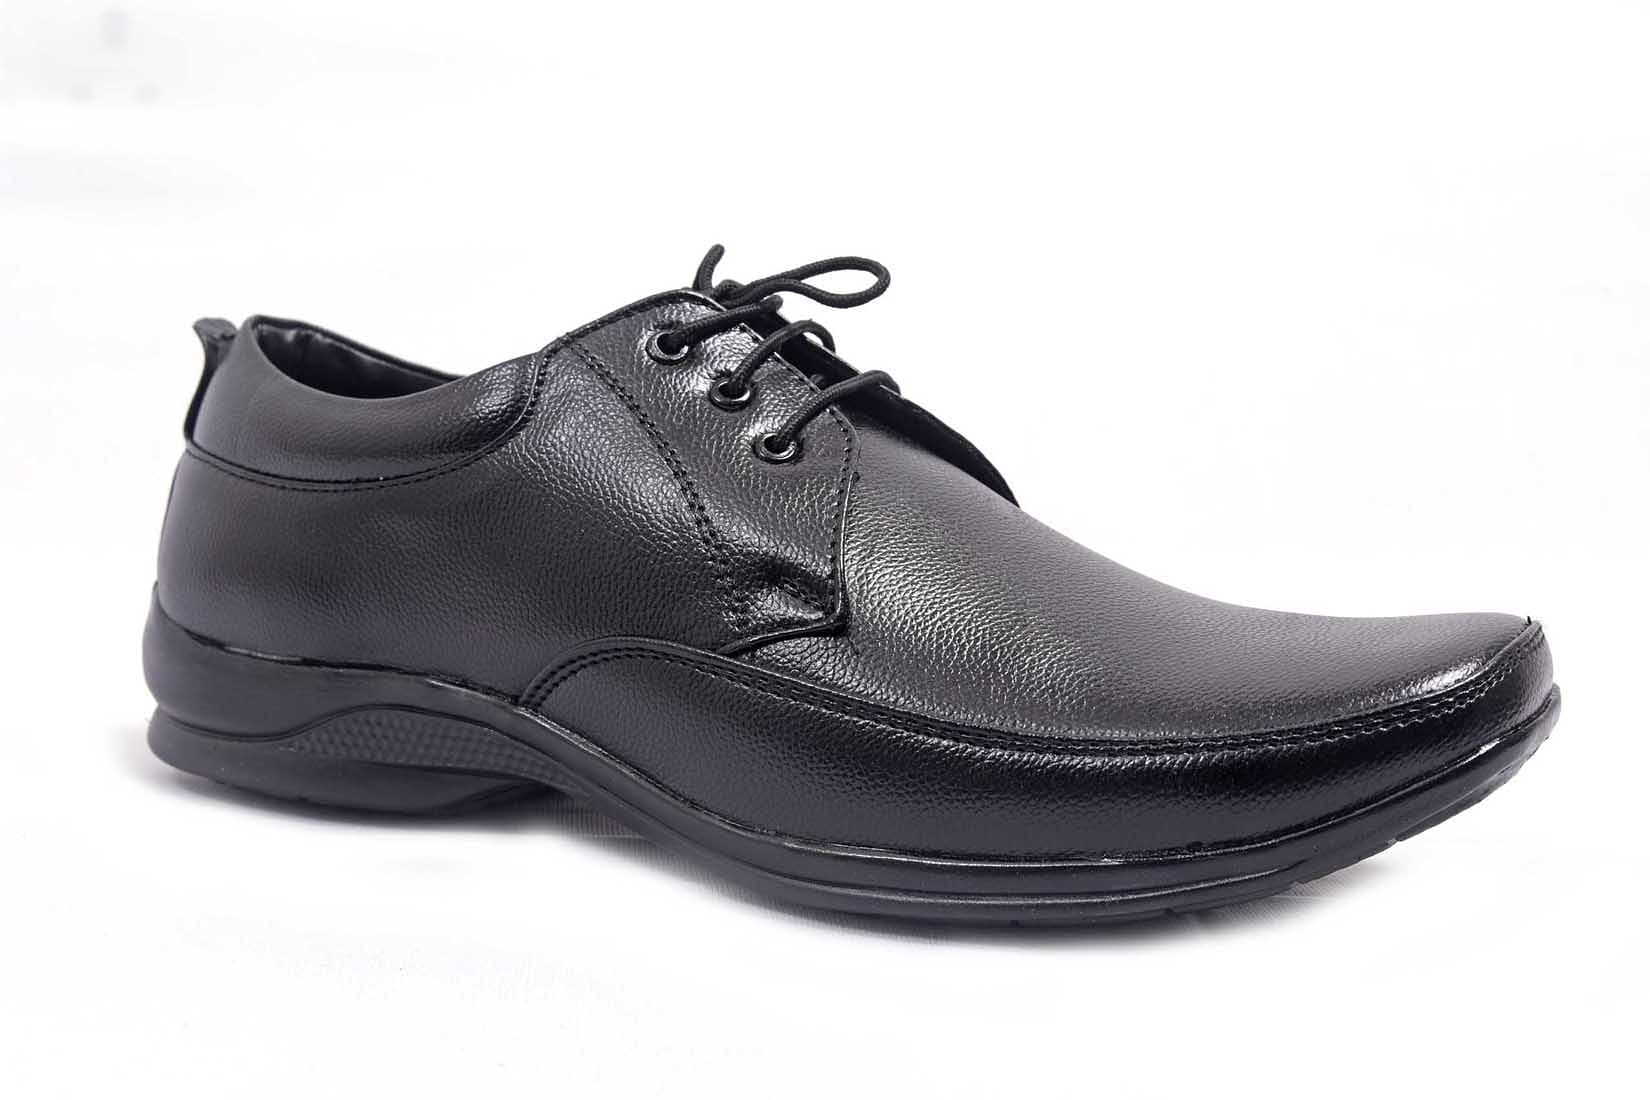 Pair-it Men derby Formal Shoes - Black-MN-RYDER204